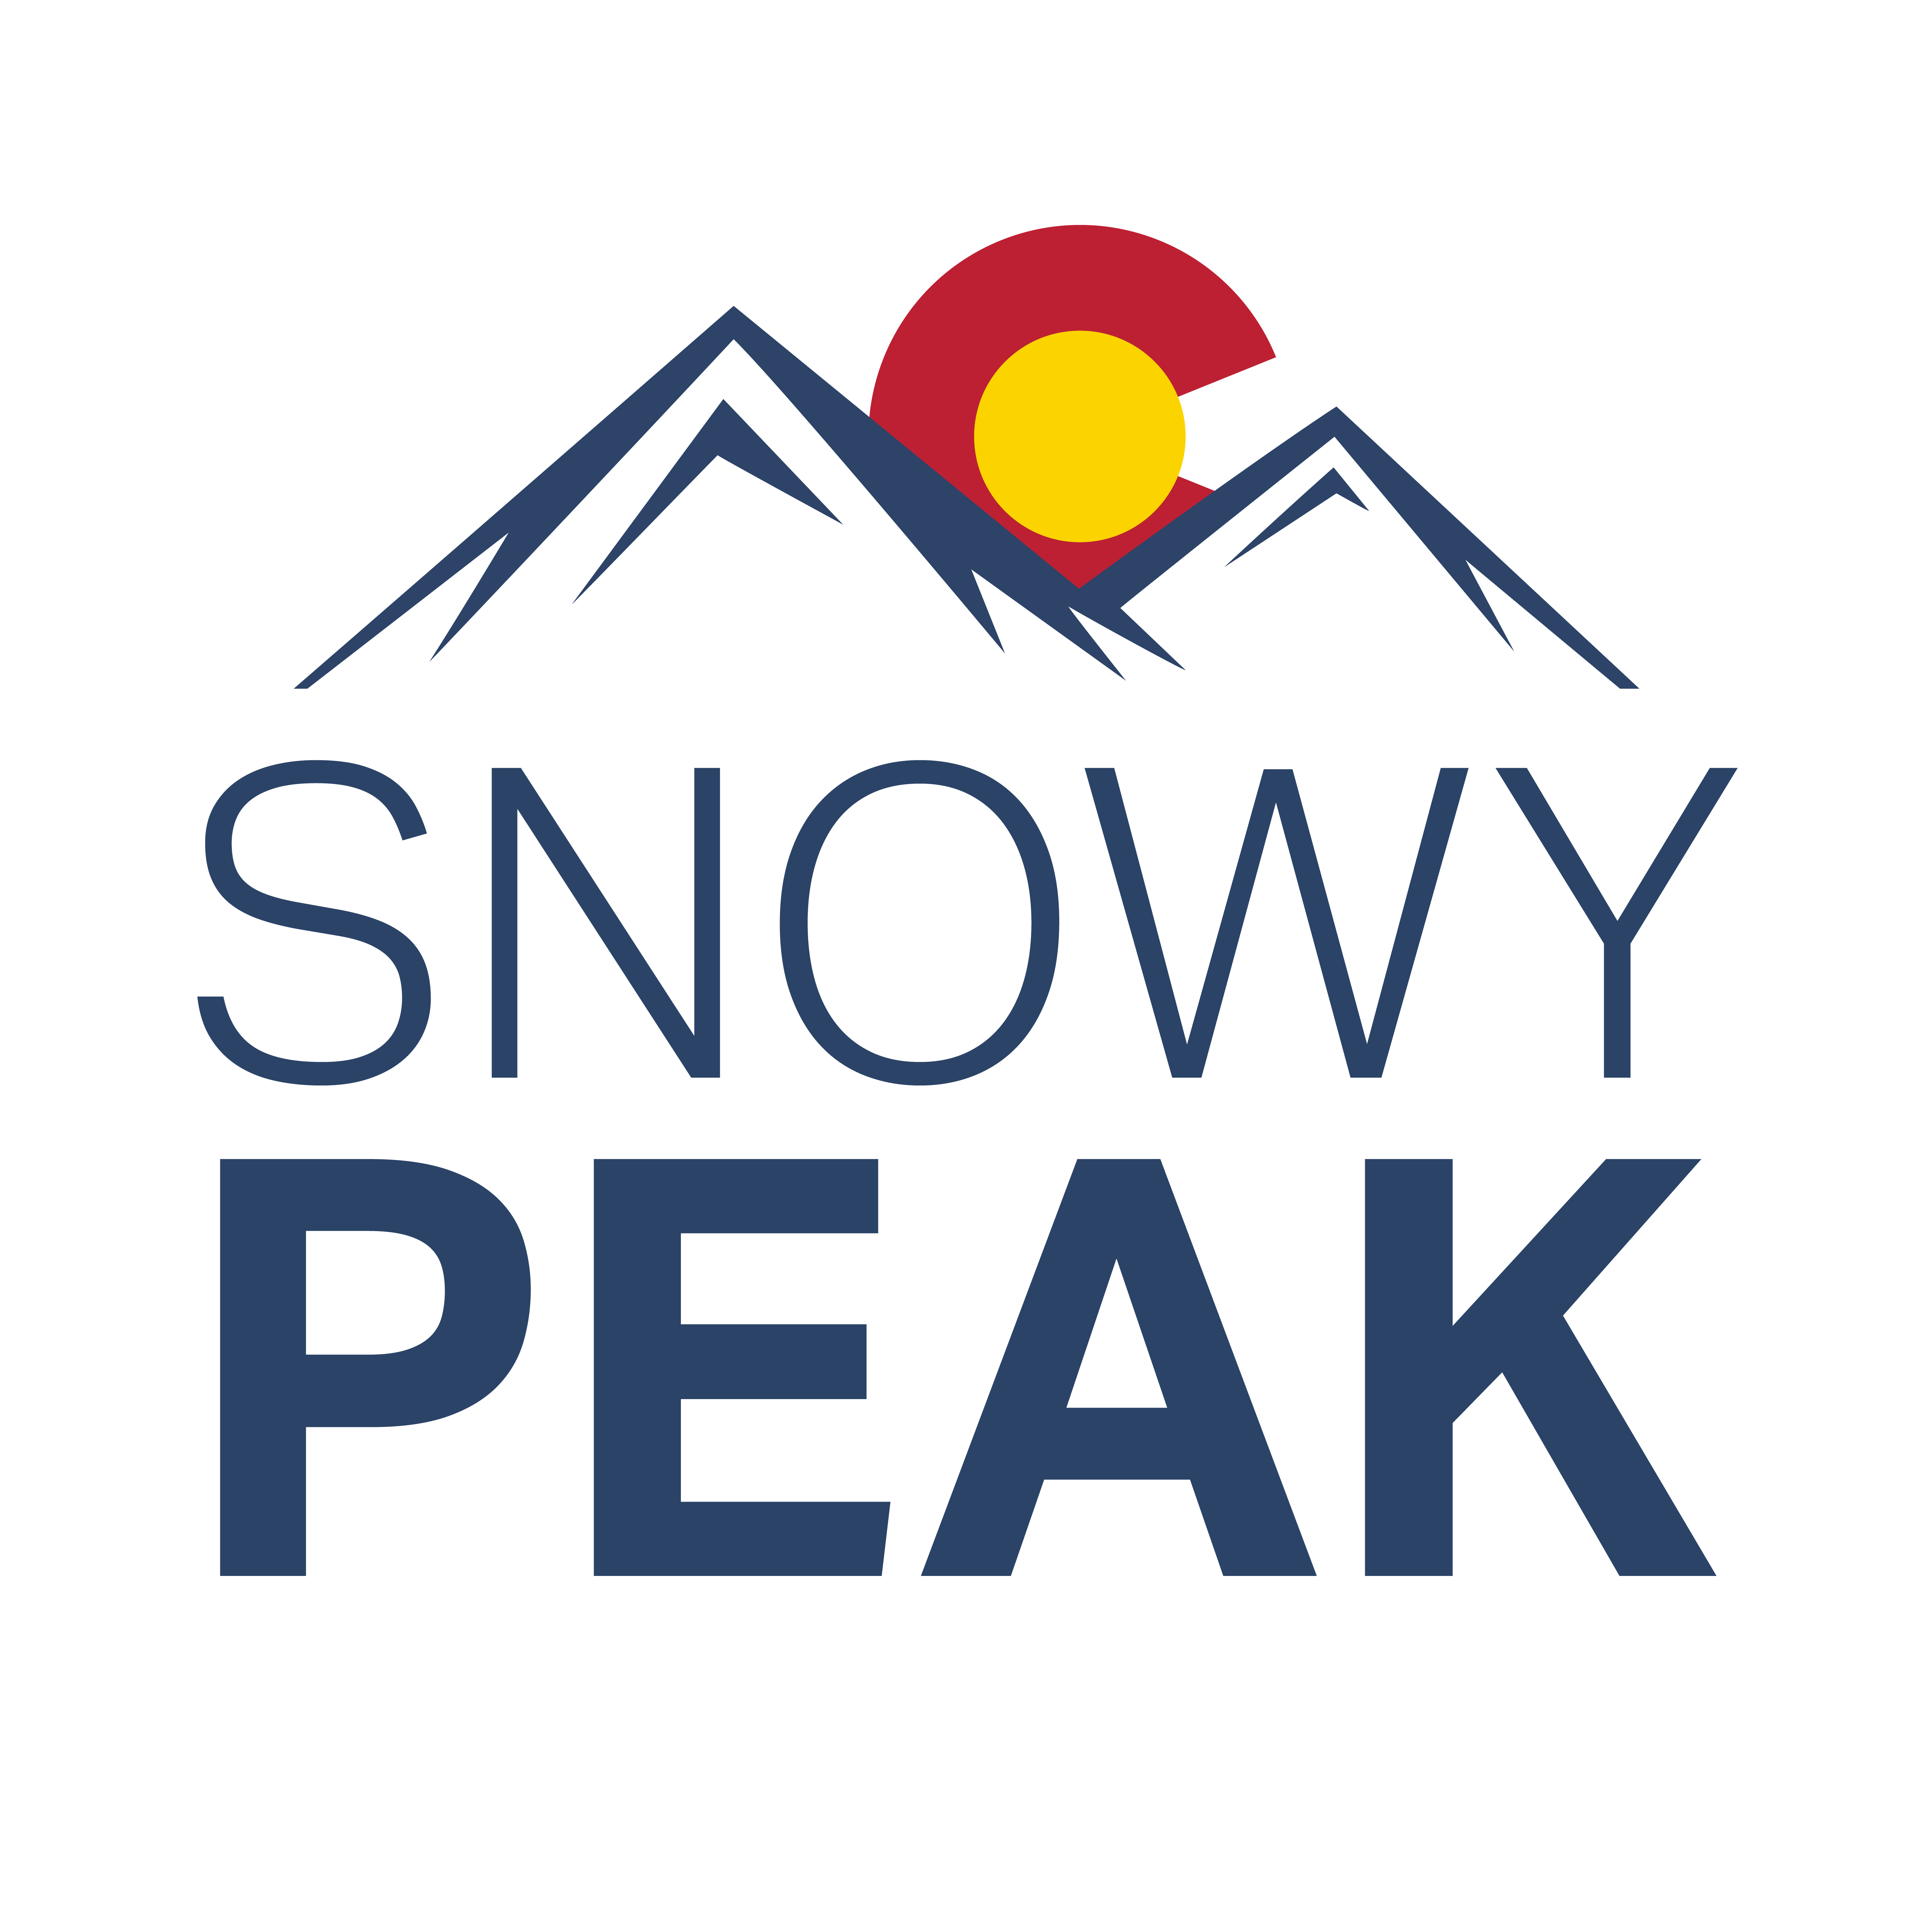 Snowy Peak 2020 Square 01 1